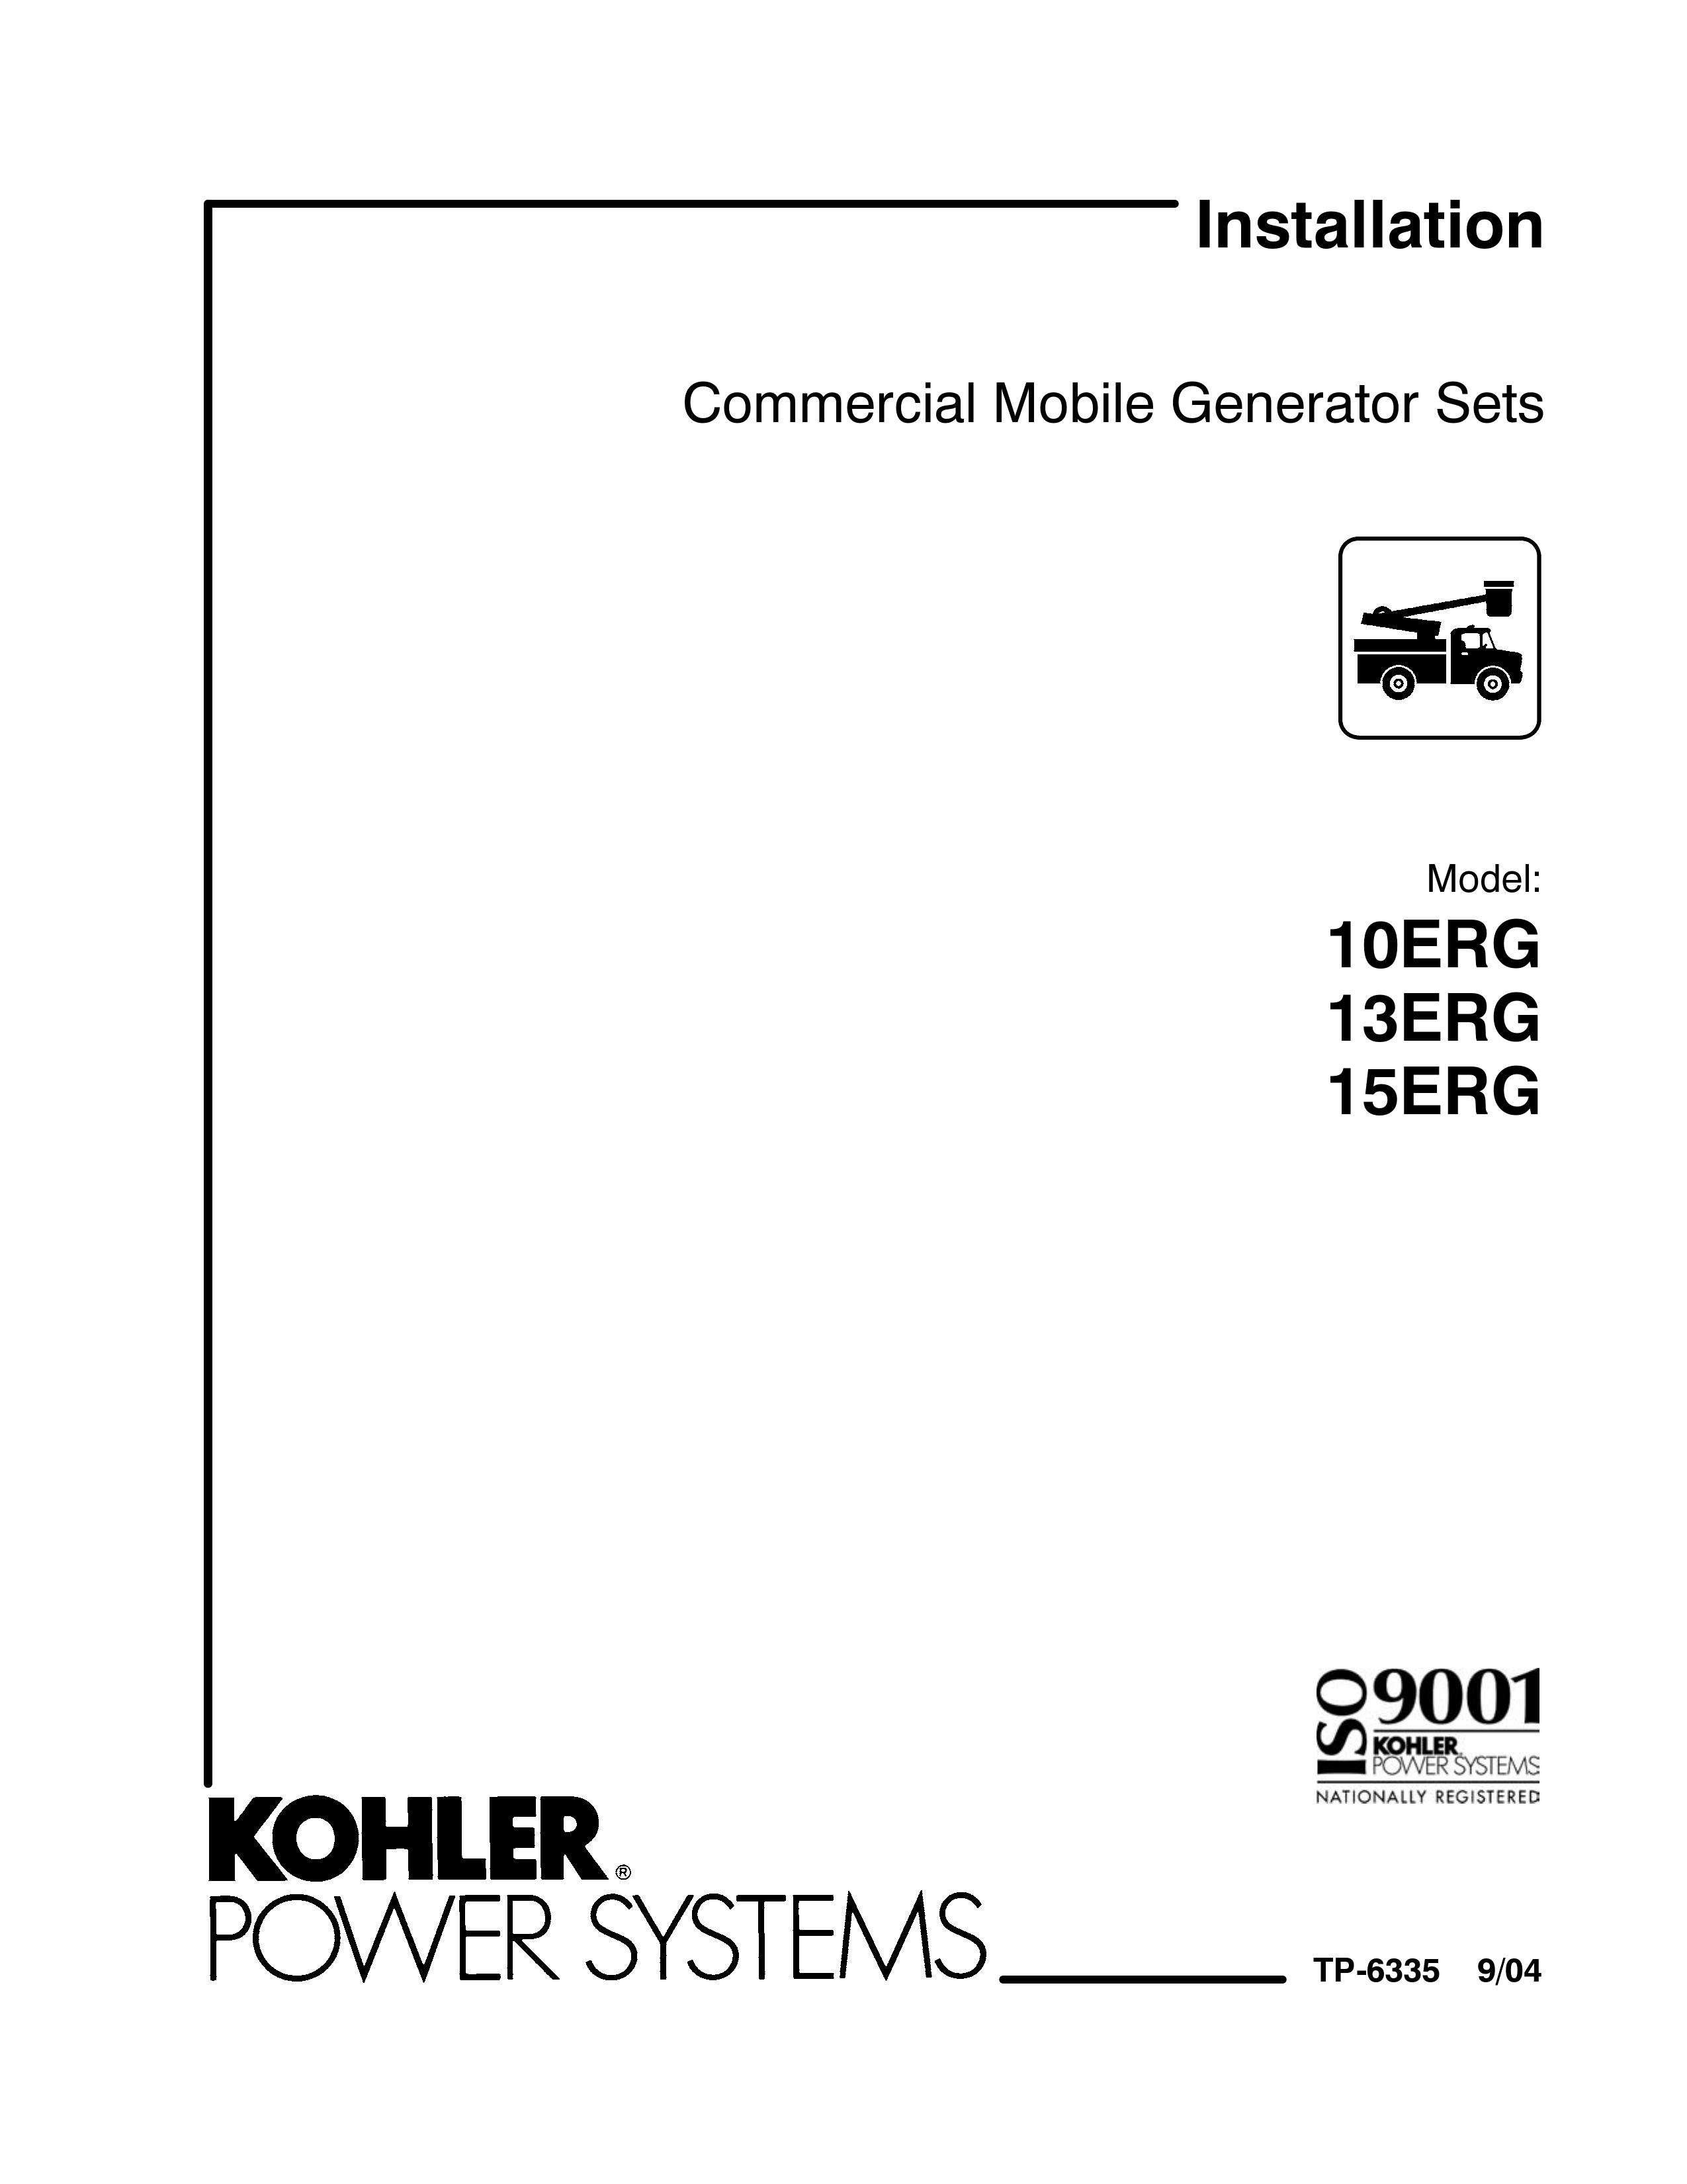 Kohler 15ERG Portable Generator User Manual